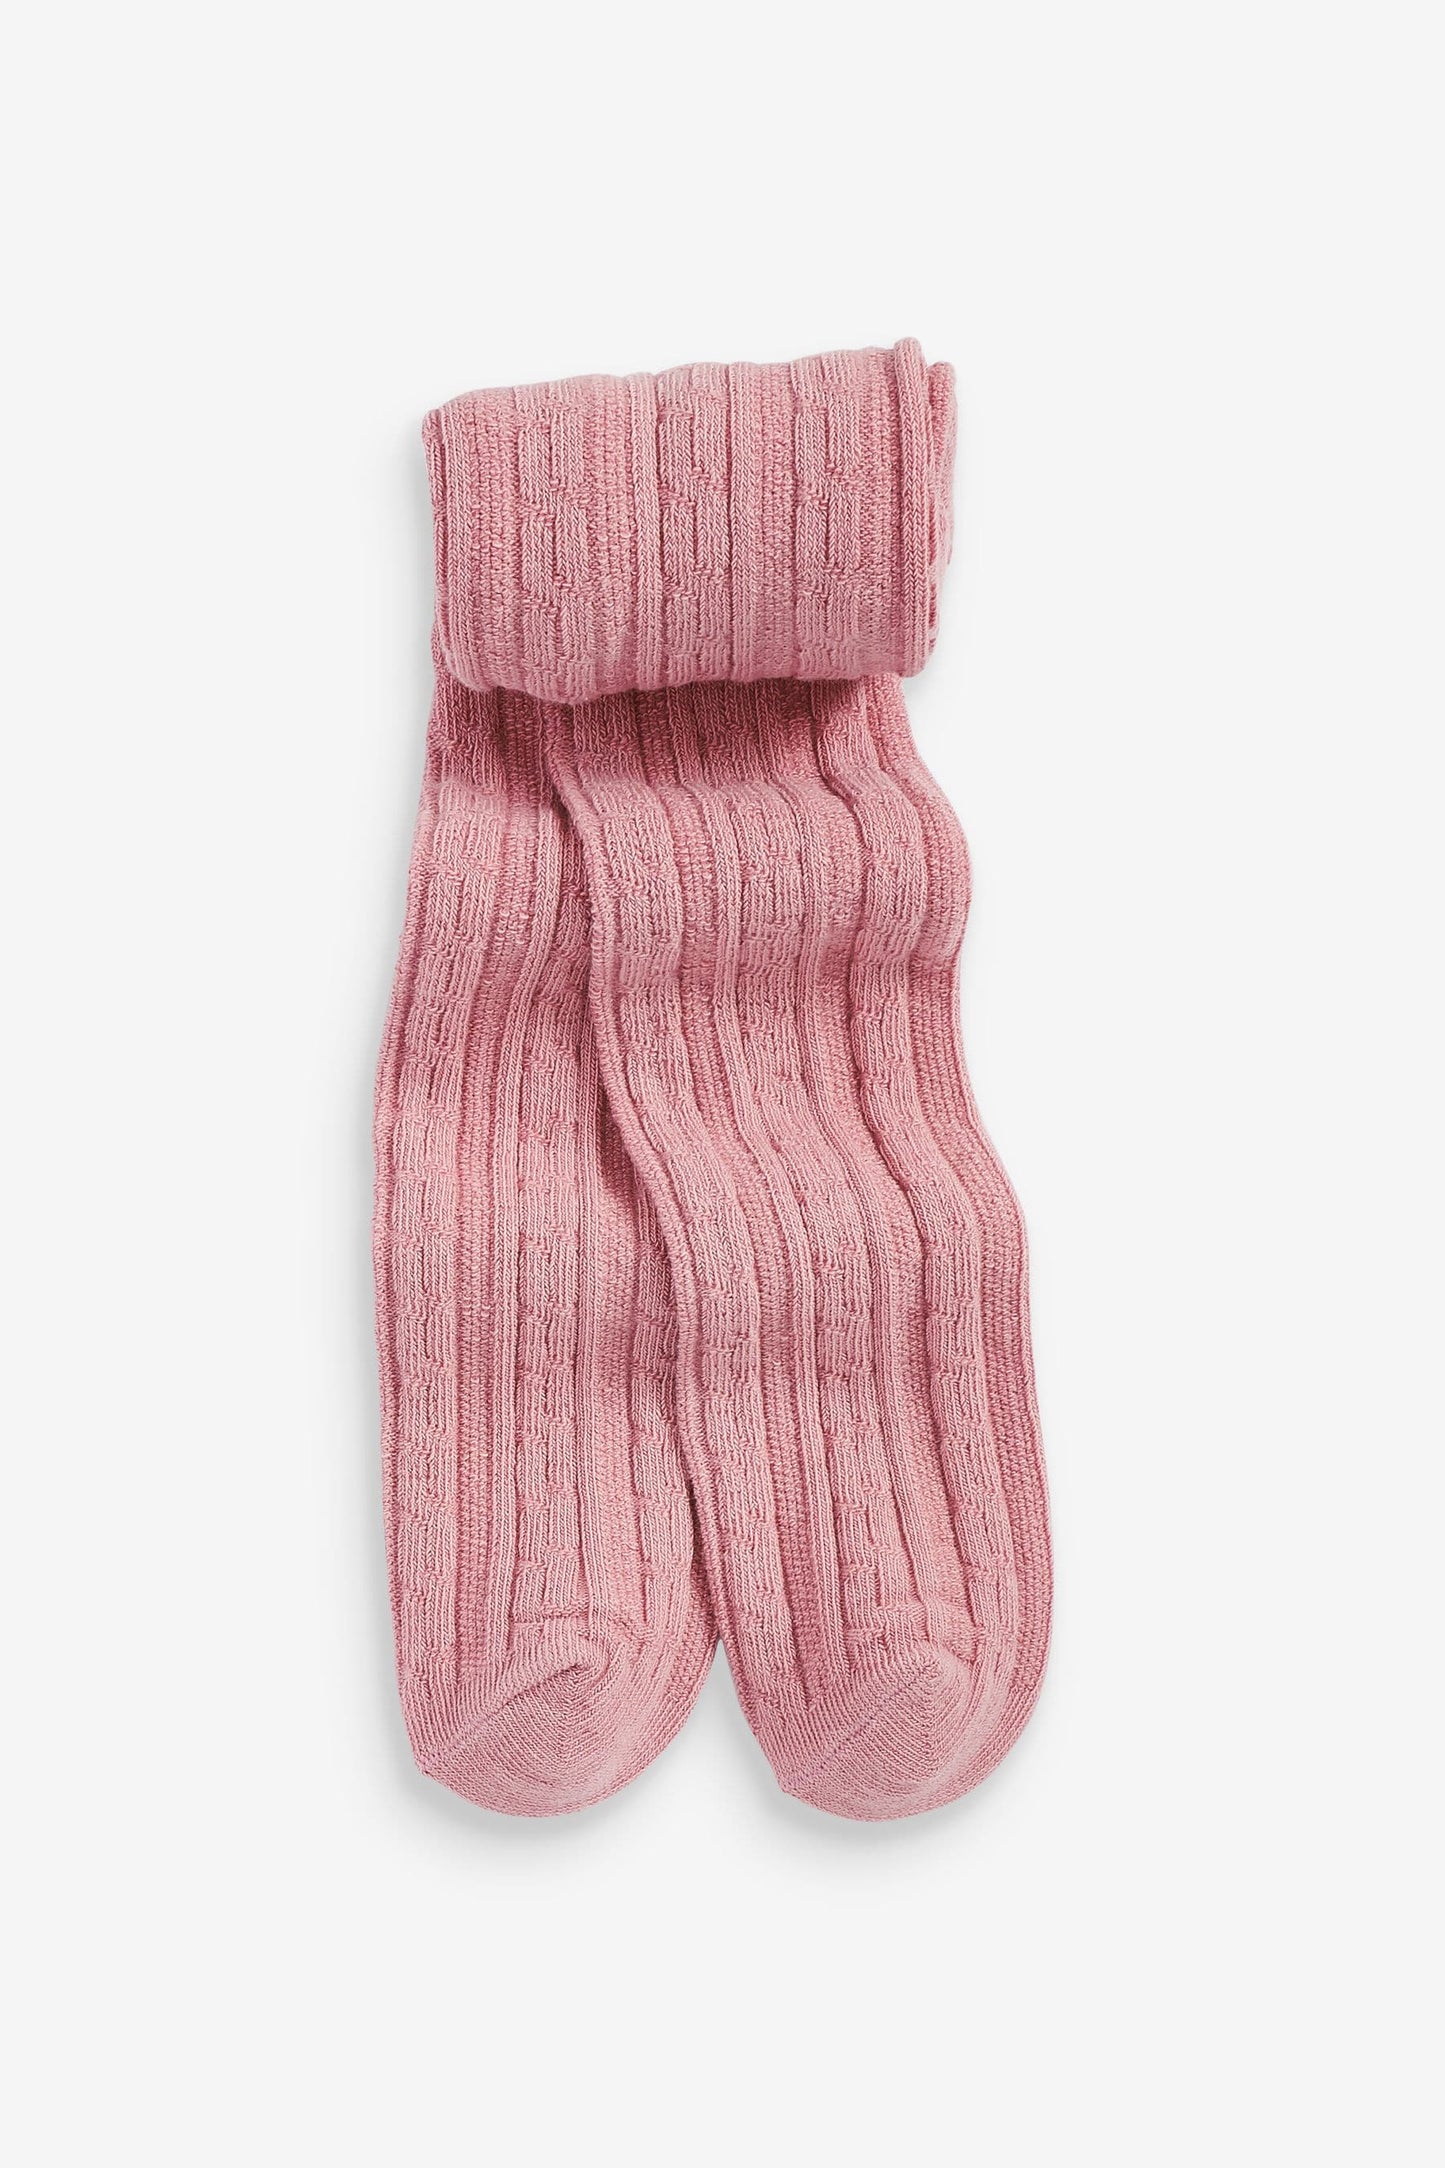 |BabyGirl| Calça Collants - Kit com 3 peças - Rosa/Creme (0meses-2anos)